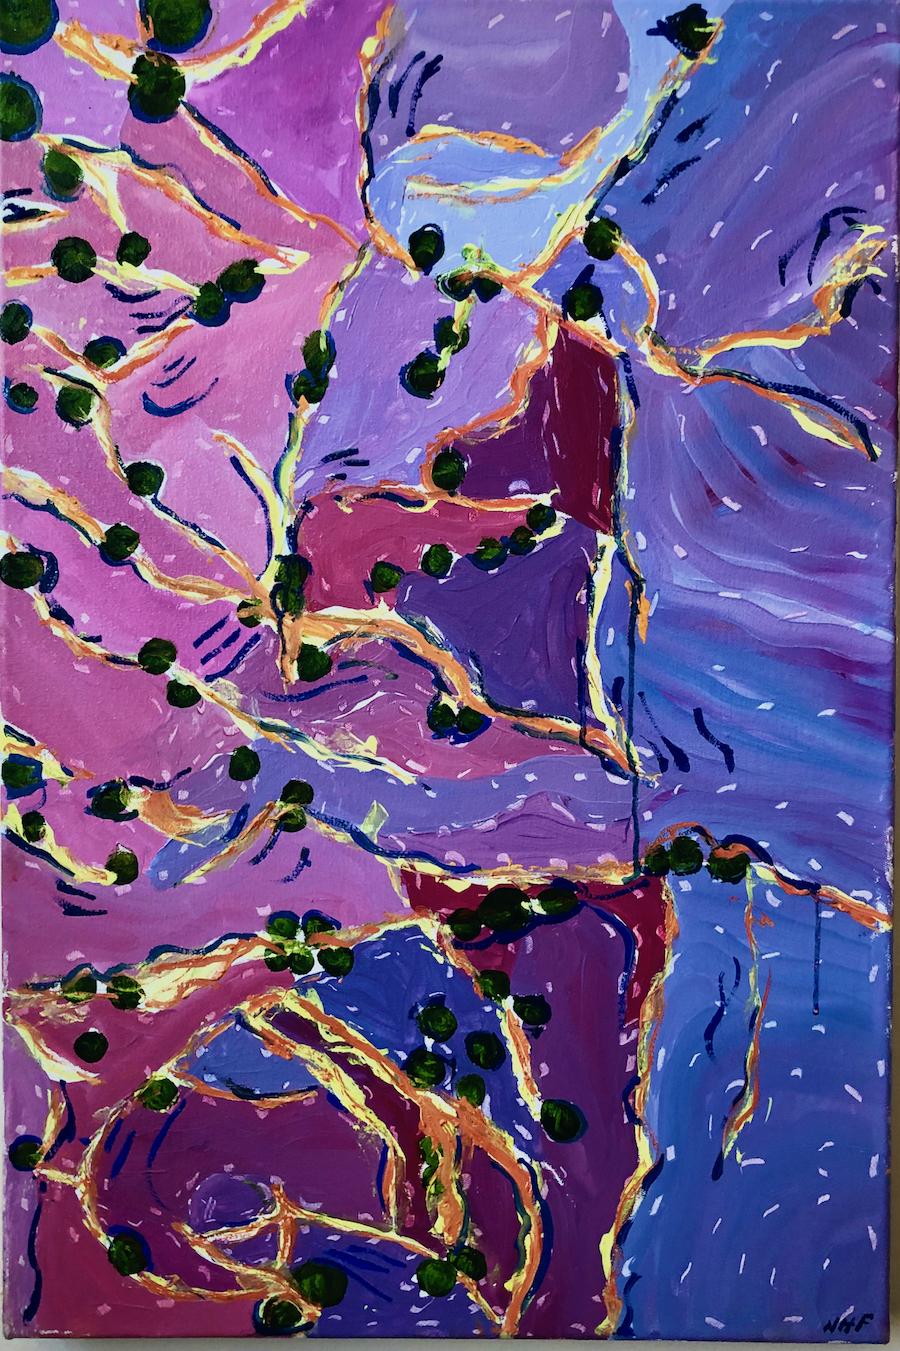 « Brain Seaweed », abstrait, violet, bleu, rose, magenta, peinture à l'huile - Painting de Nan Hass Feldman